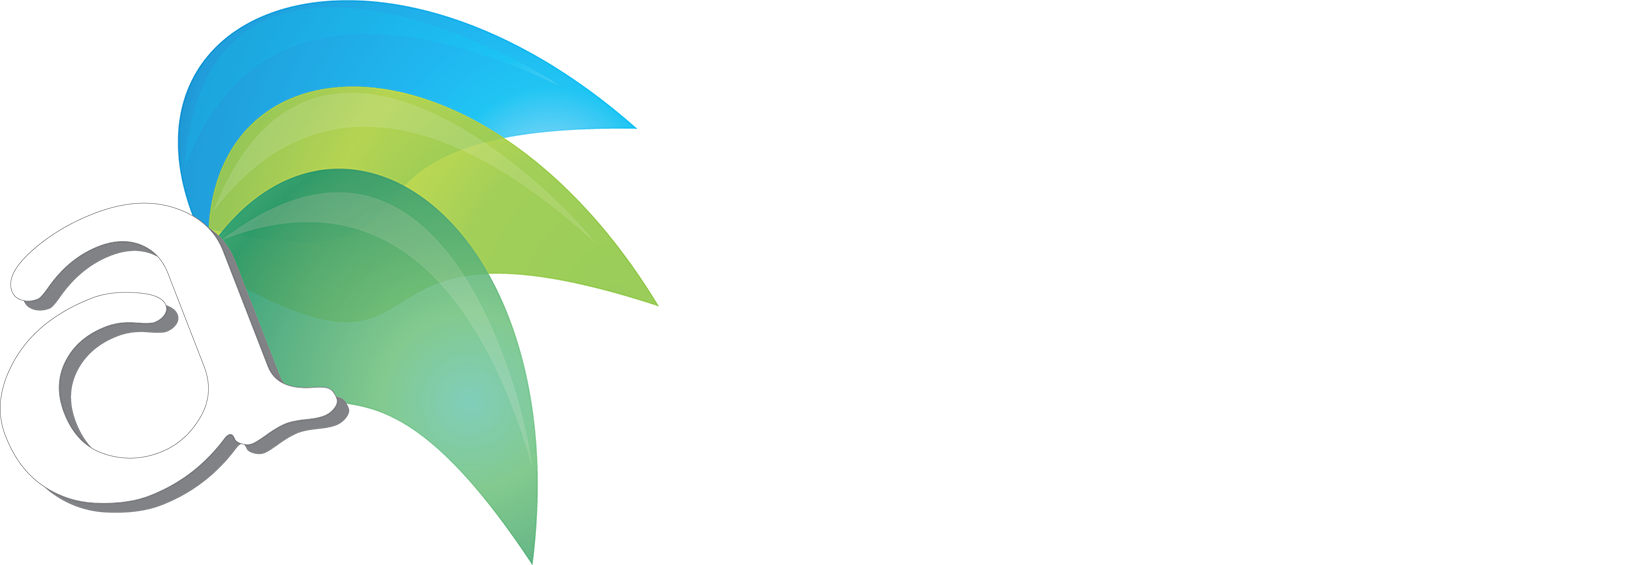 Aspiring Media Tech